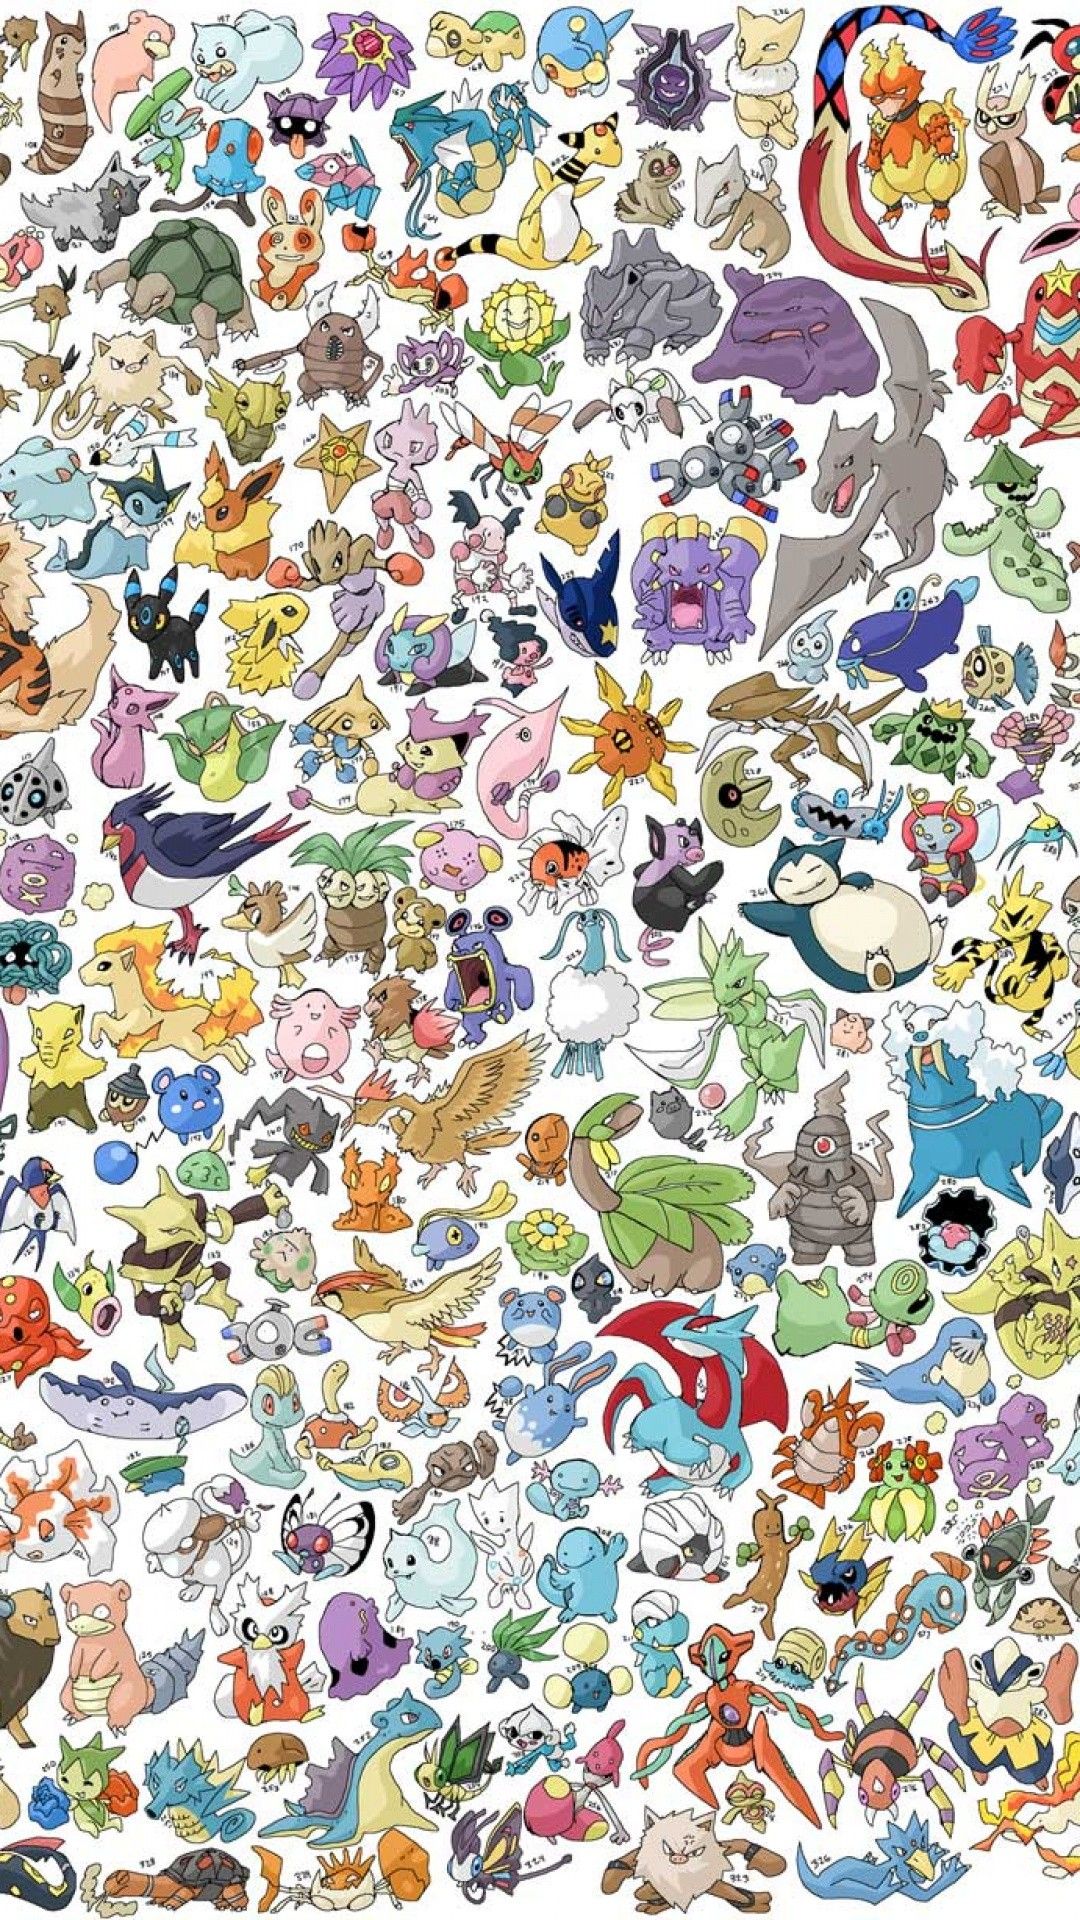 Tận hưởng thế giới đầy màu sắc của các nhân vật Pokemon với hình nền Pokémon iPhone Wallpapers. Hãy cho phép những tấm hình này đưa bạn vào một cuộc phiêu lưu đầy thú vị và tạo nên cảm hứng sáng tạo không giới hạn cho bạn.